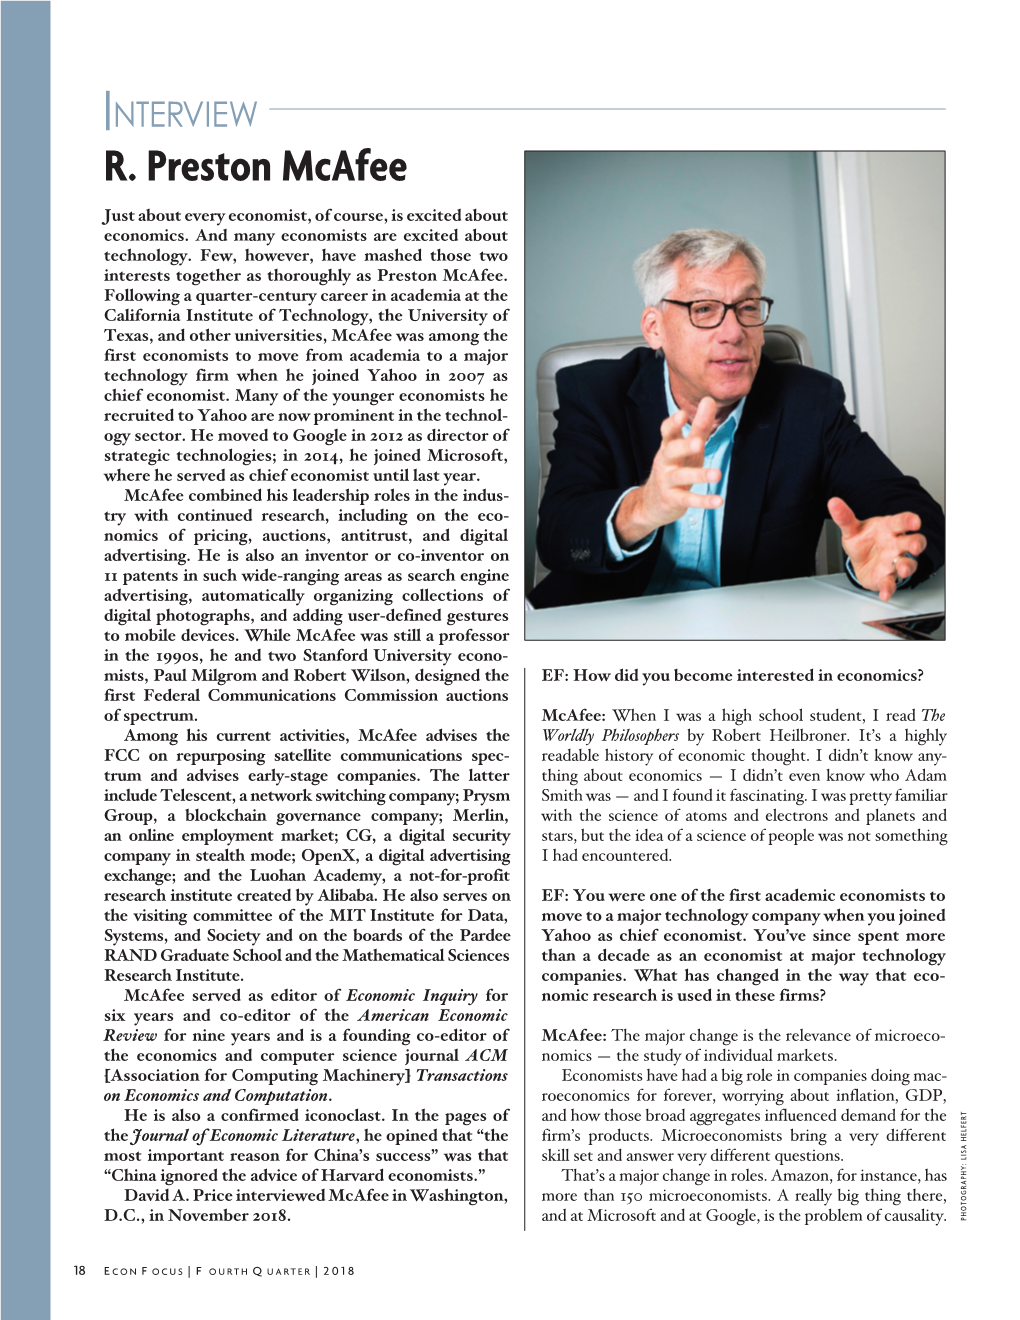 Interview: R. Preston Mcafee